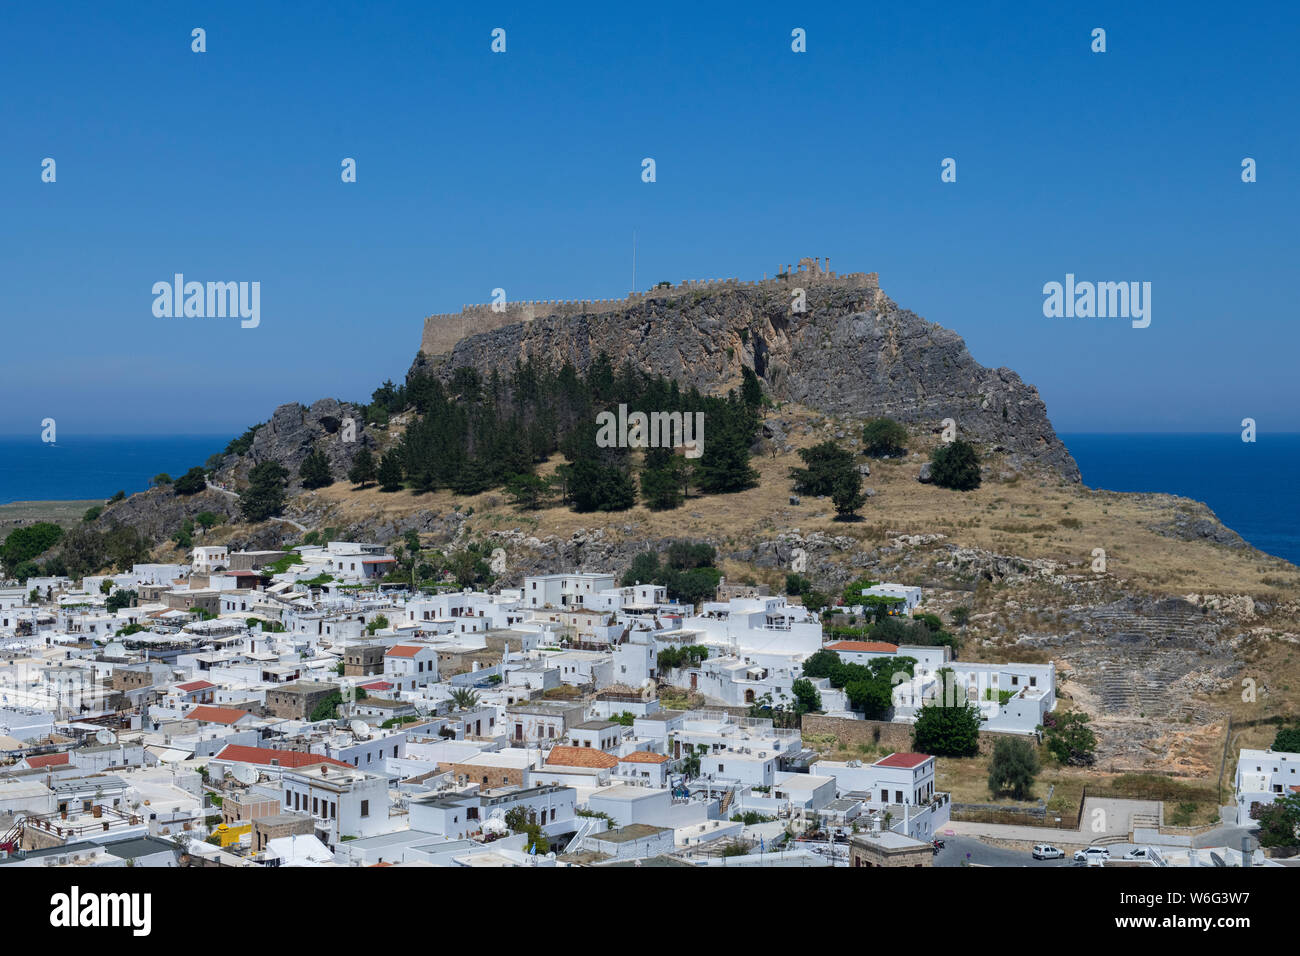 La Grèce, Rhodes, la plus grande des îles du Dodécanèse. Lindos historique, vue panoramique de l'Acropole de Lindos et les ruines de Temple d'Athéna. Banque D'Images